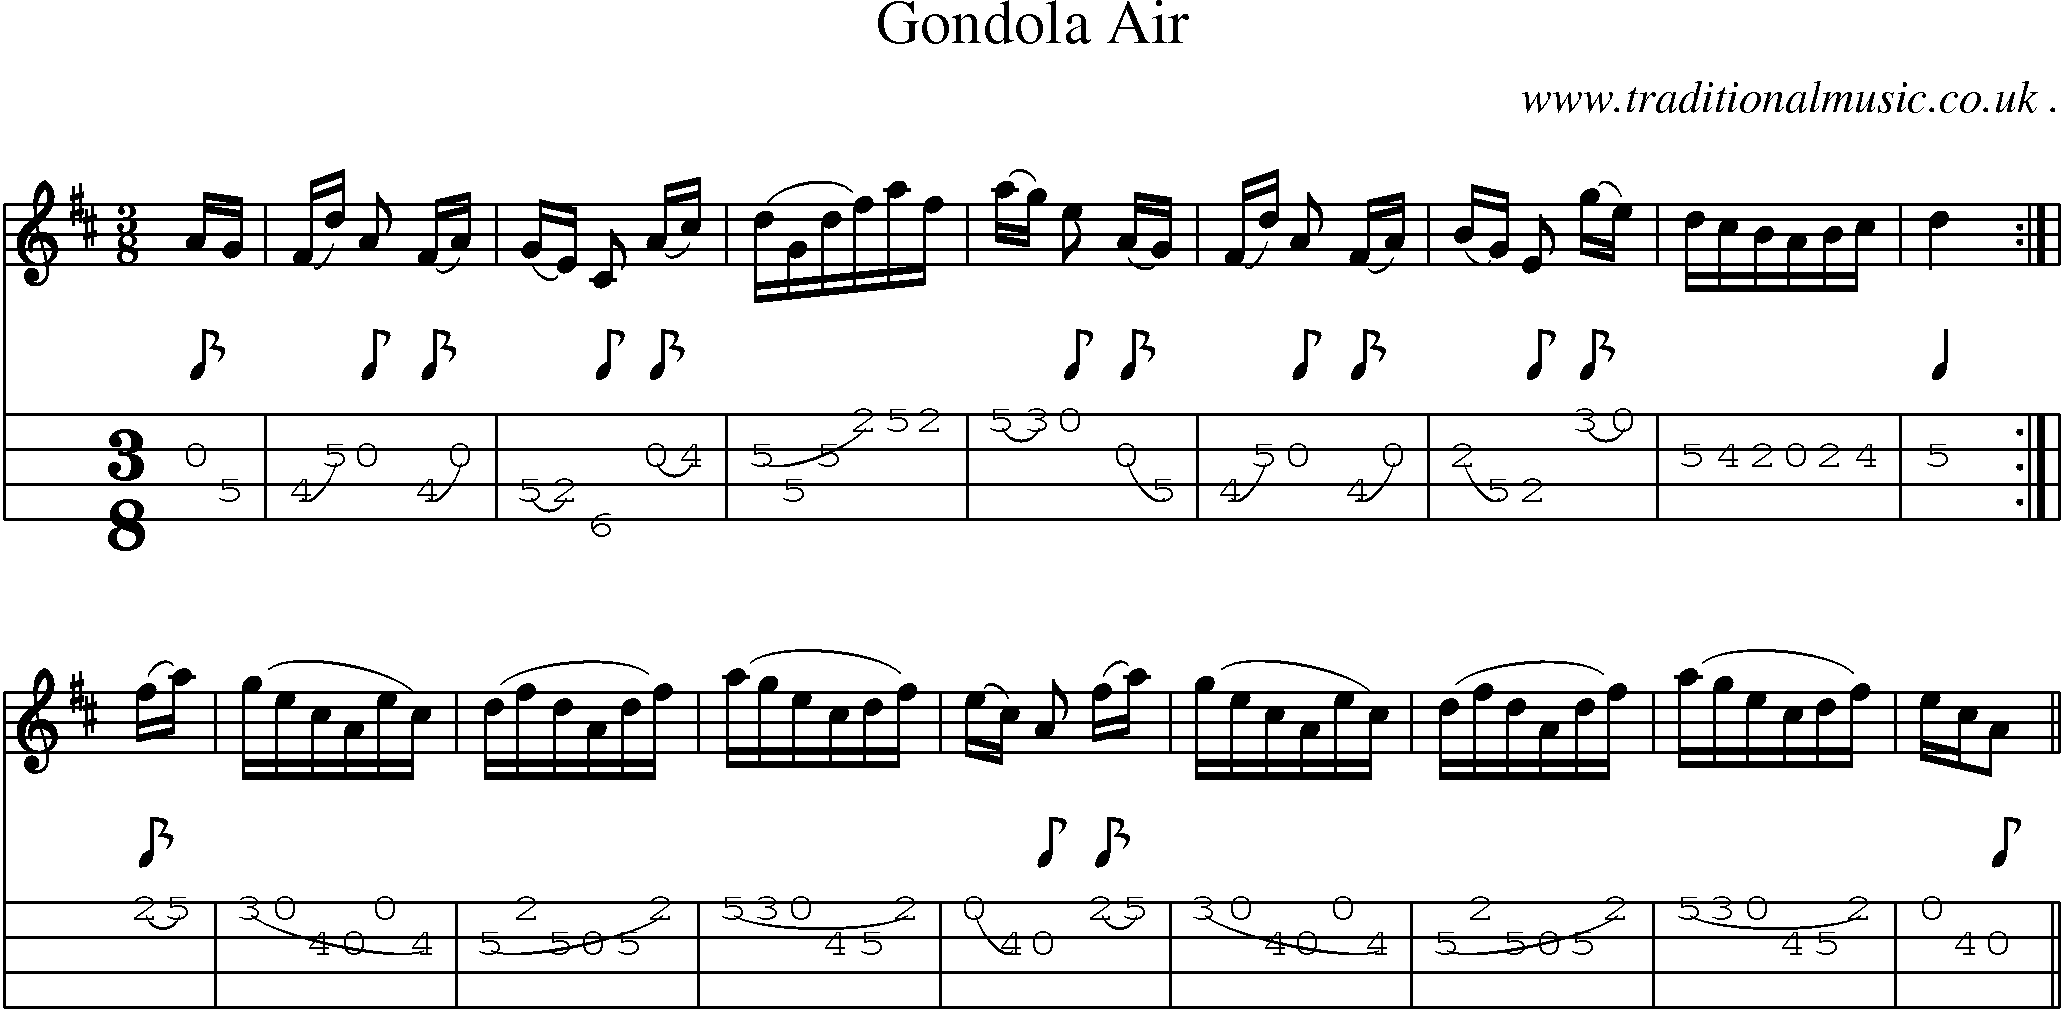 Sheet-Music and Mandolin Tabs for Gondola Air